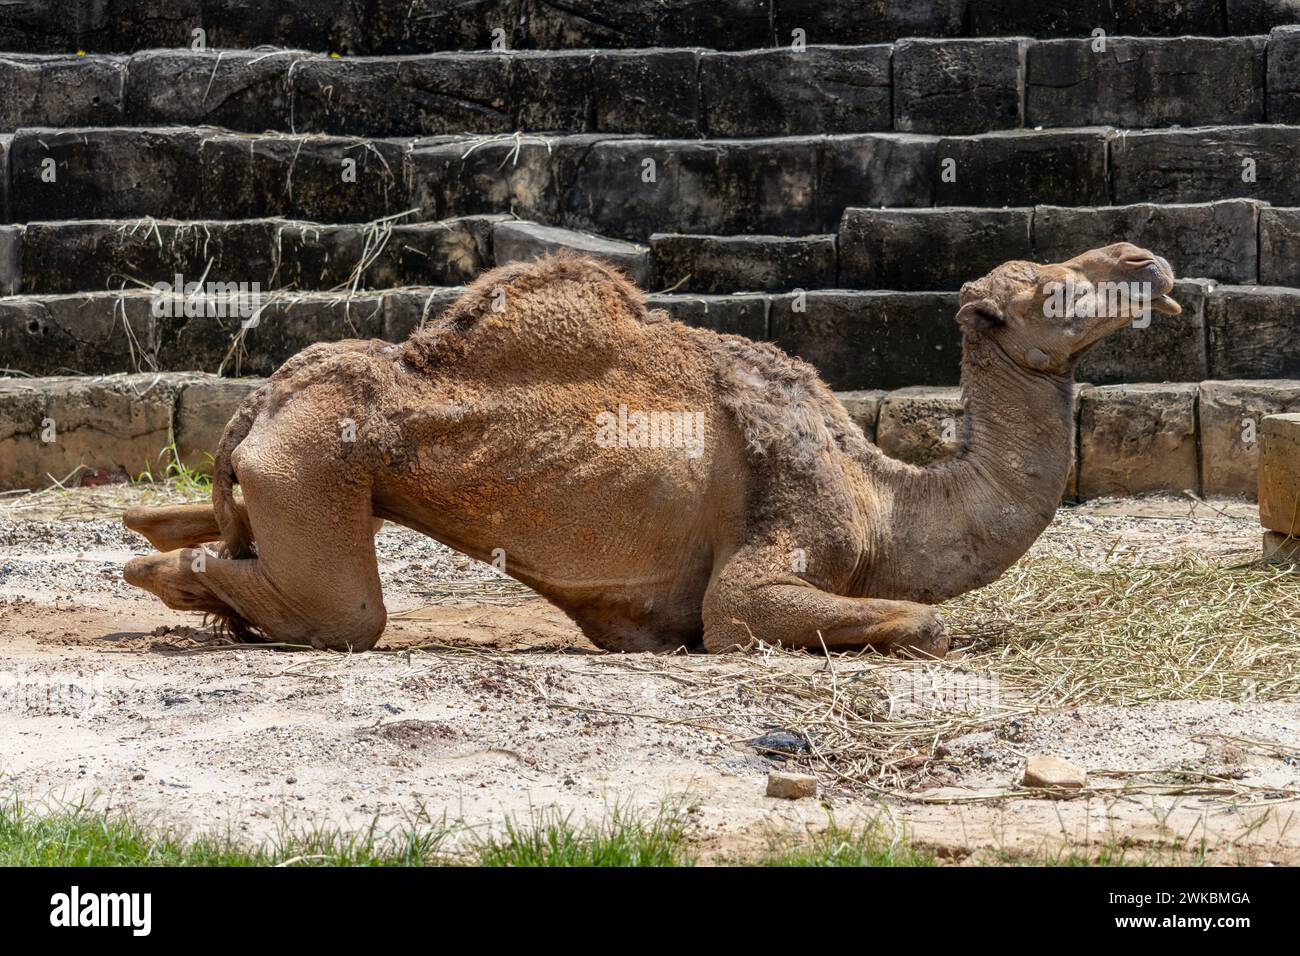 Ein ausgemerderter Dromedar - ein arabisches Kamel, das neben einer gestuften Struktur liegt Stockfoto